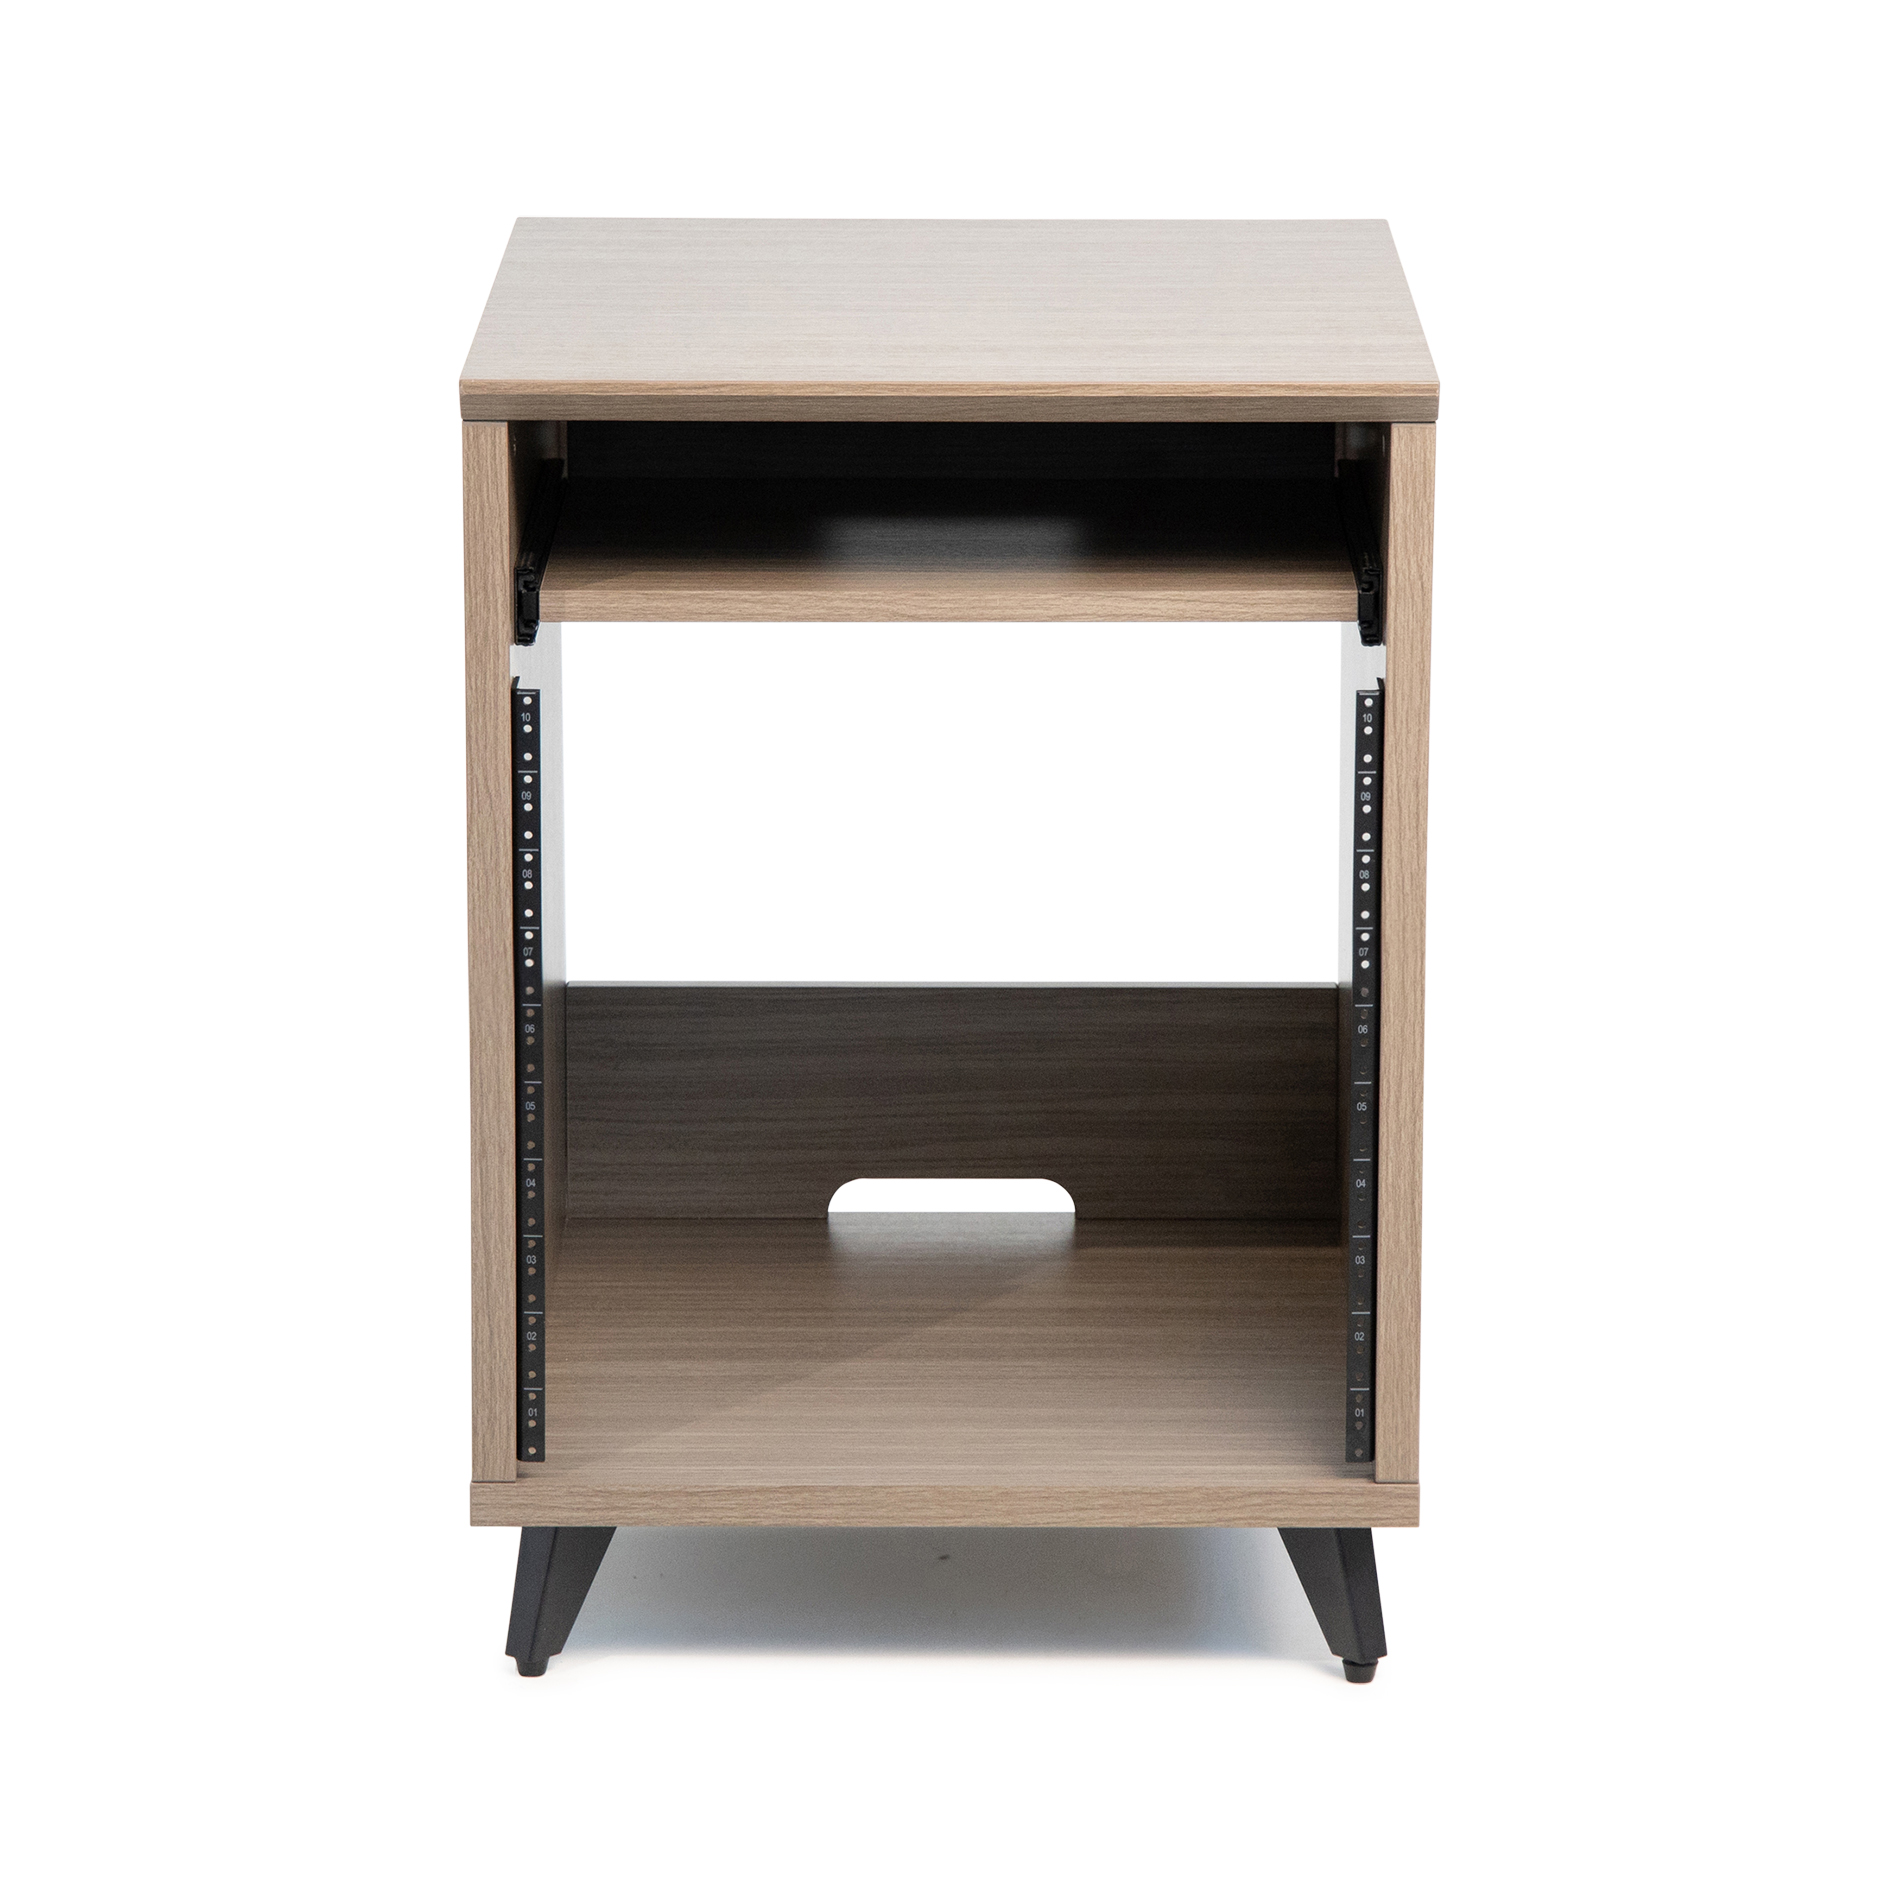 Elite Series Furniture Desk 10U Rack – GRY-GFW-ELITEDESKRK-GRY